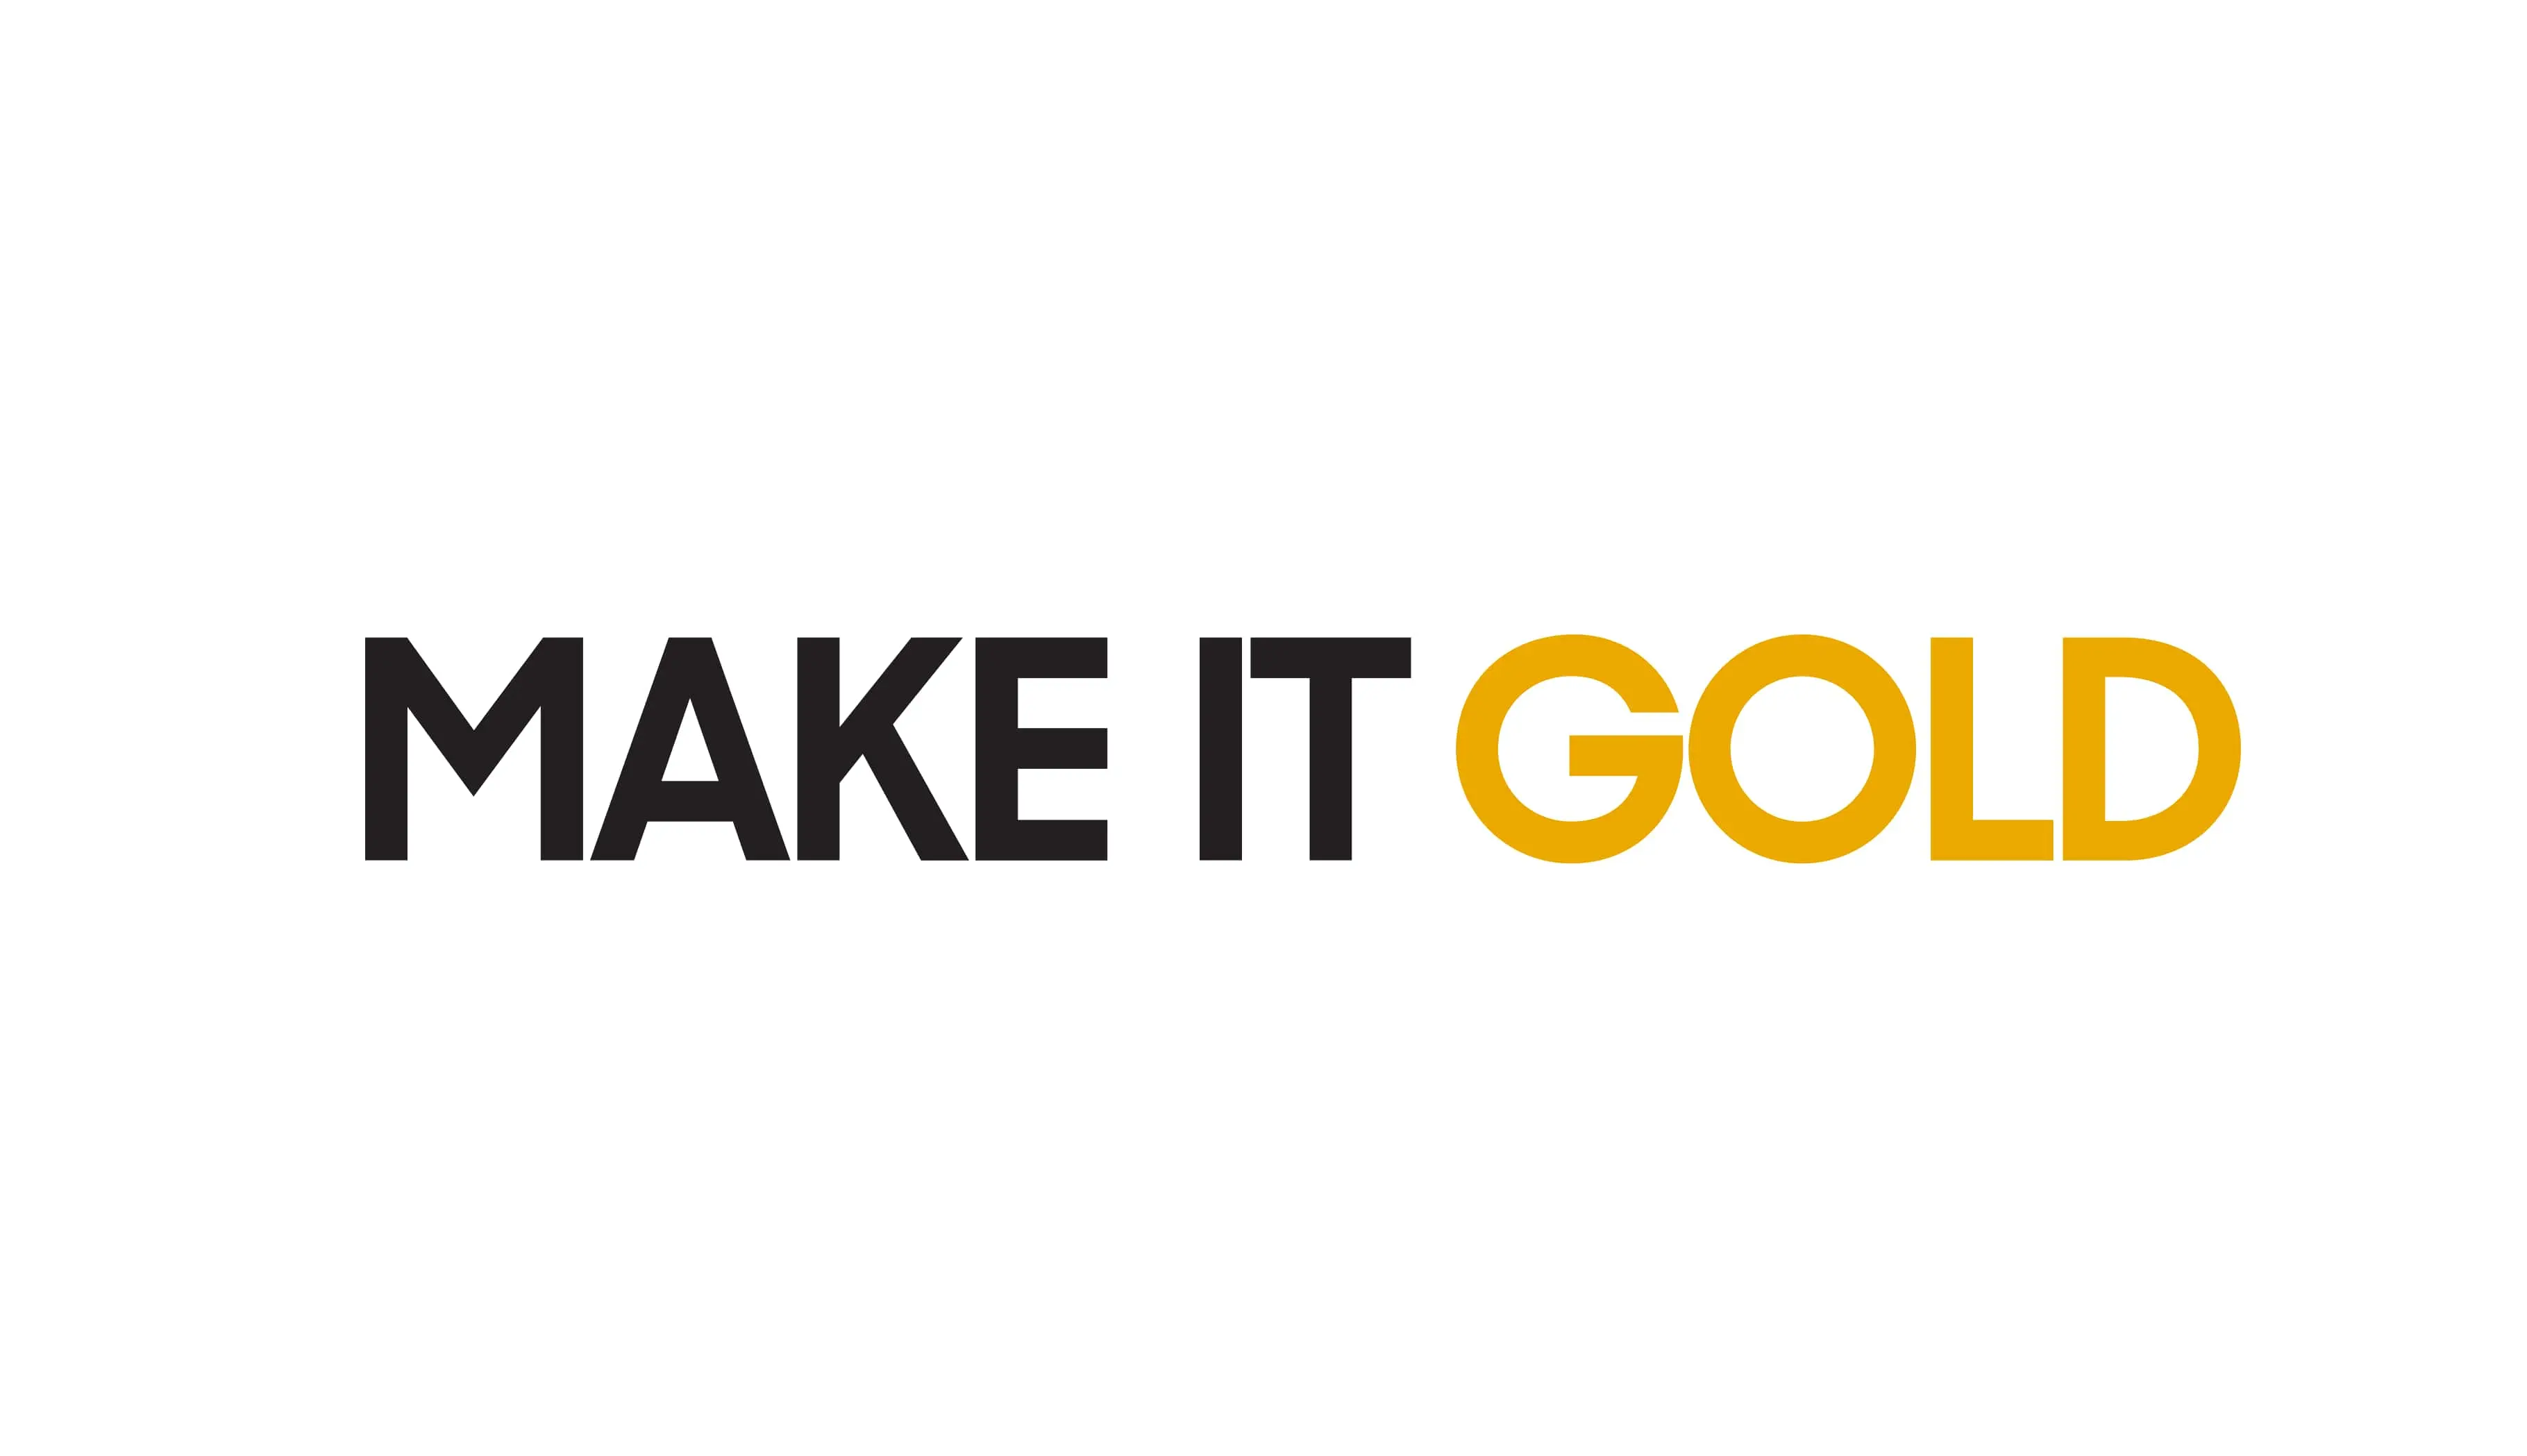 Make it gold tagline